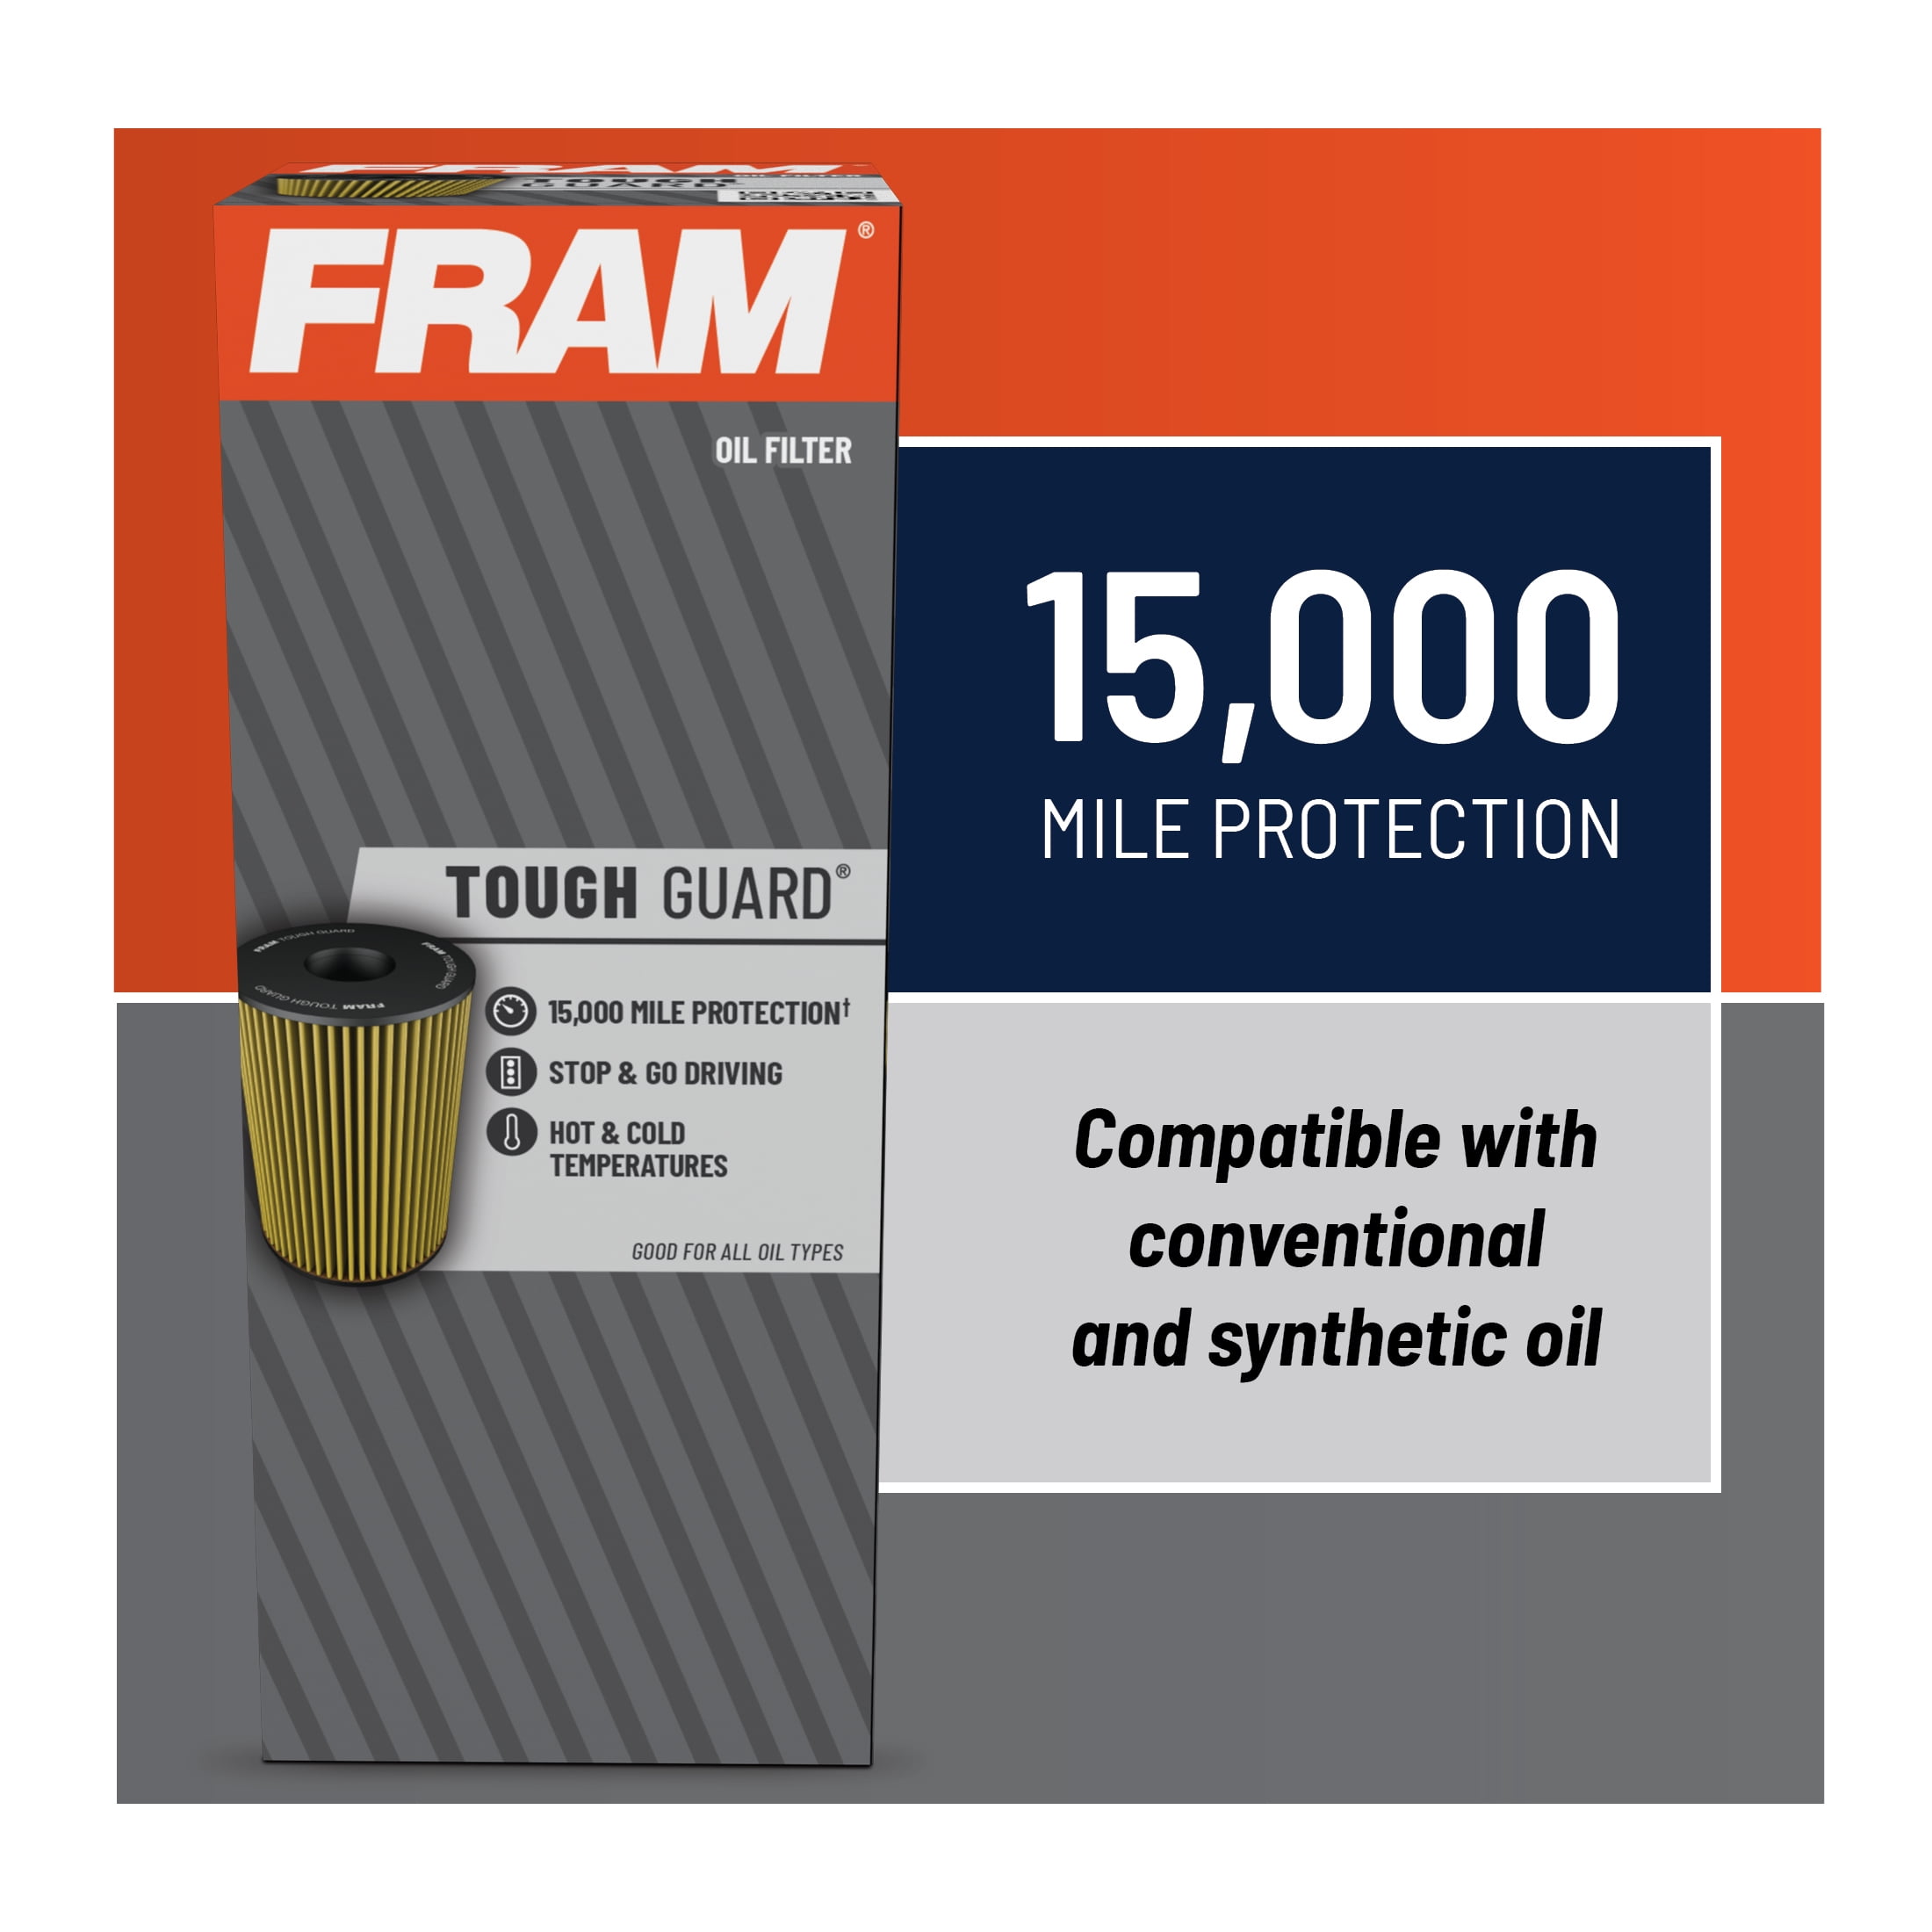 FRAM Tough Guard Filter TG10246, 15K mile Change Interval Oil Filter